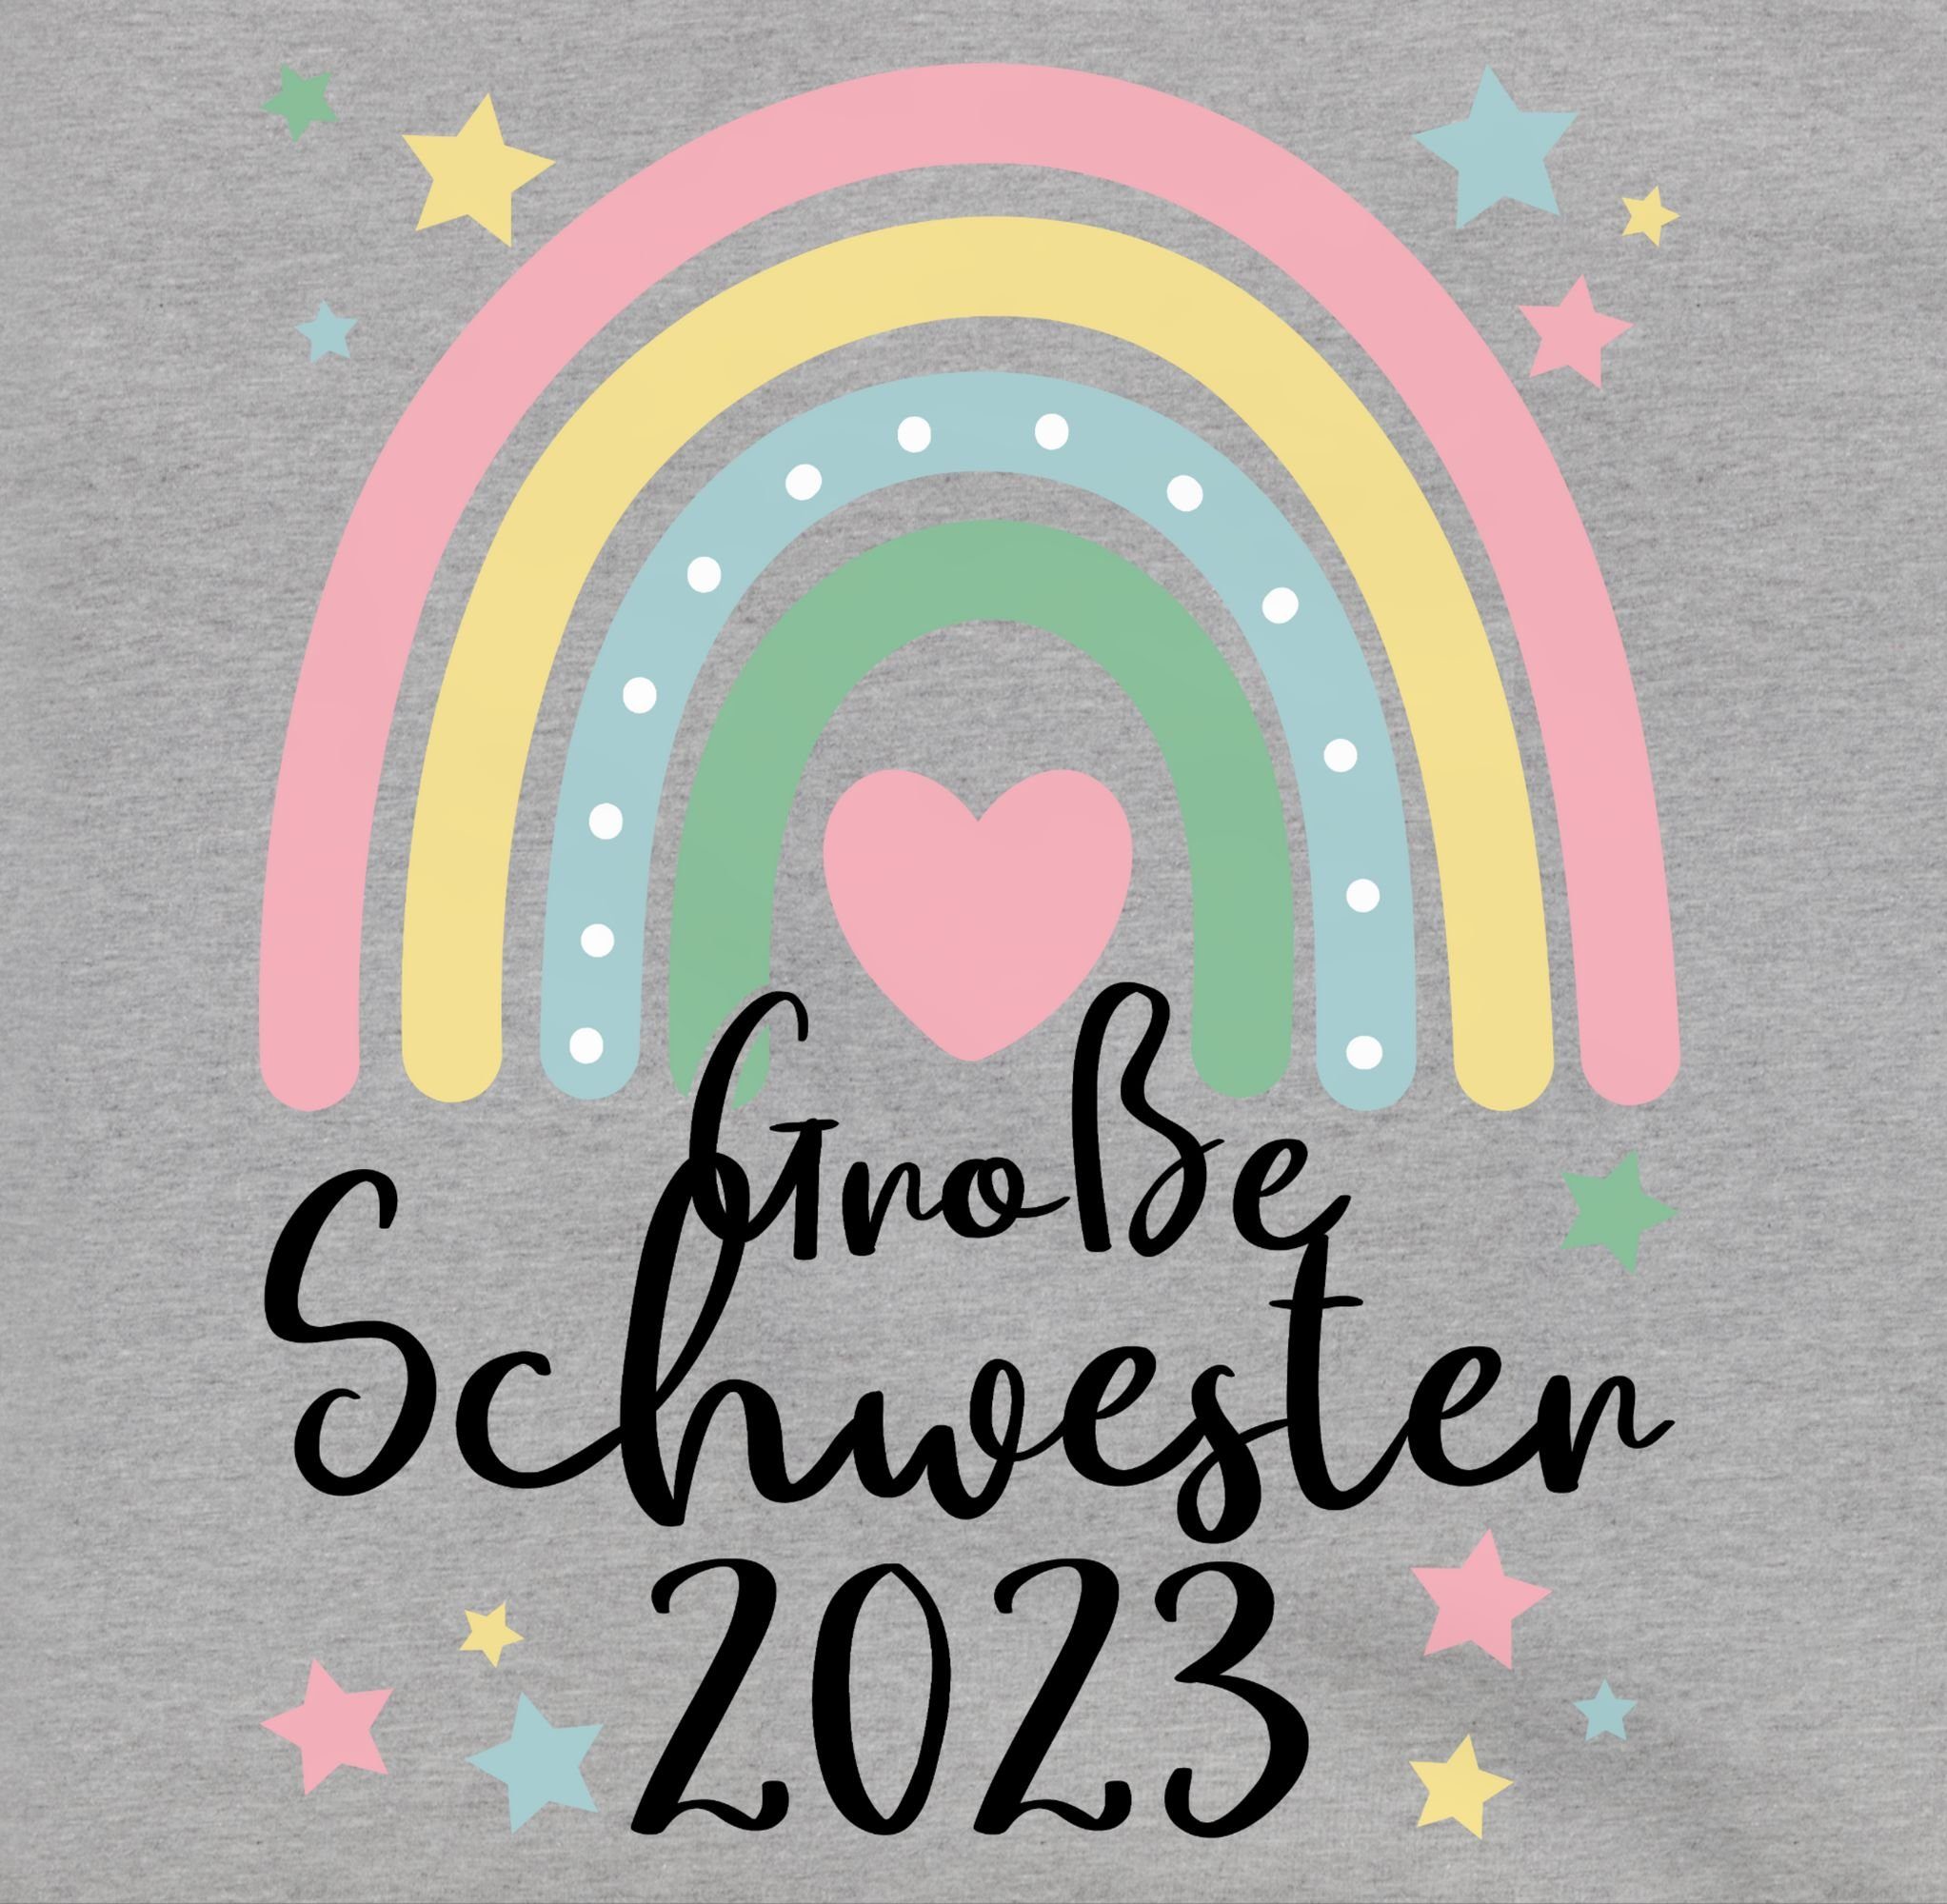 Shirtracer Hoodie Große 2 Grau Blau 2023 Sister Schwester meliert/Navy Big Regenbogen Große Geschenk Schwester